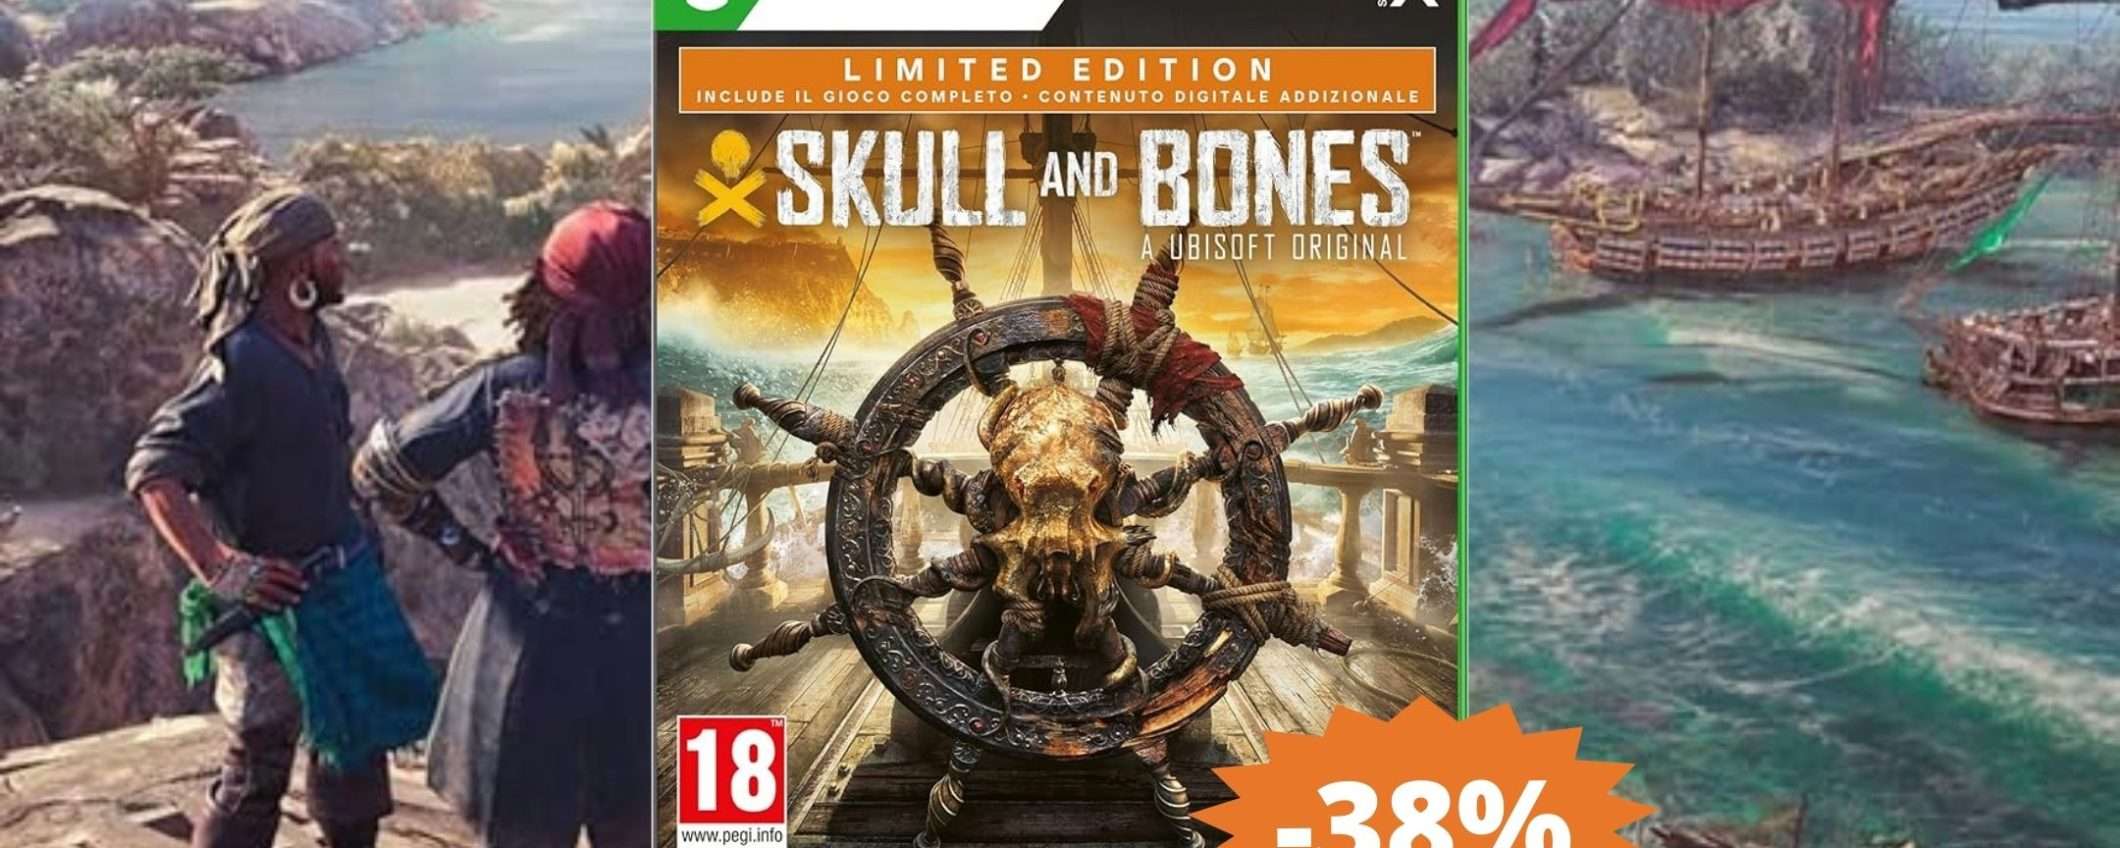 Skull & Bones per Xbox Series X: sconto ASSURDO del 38%